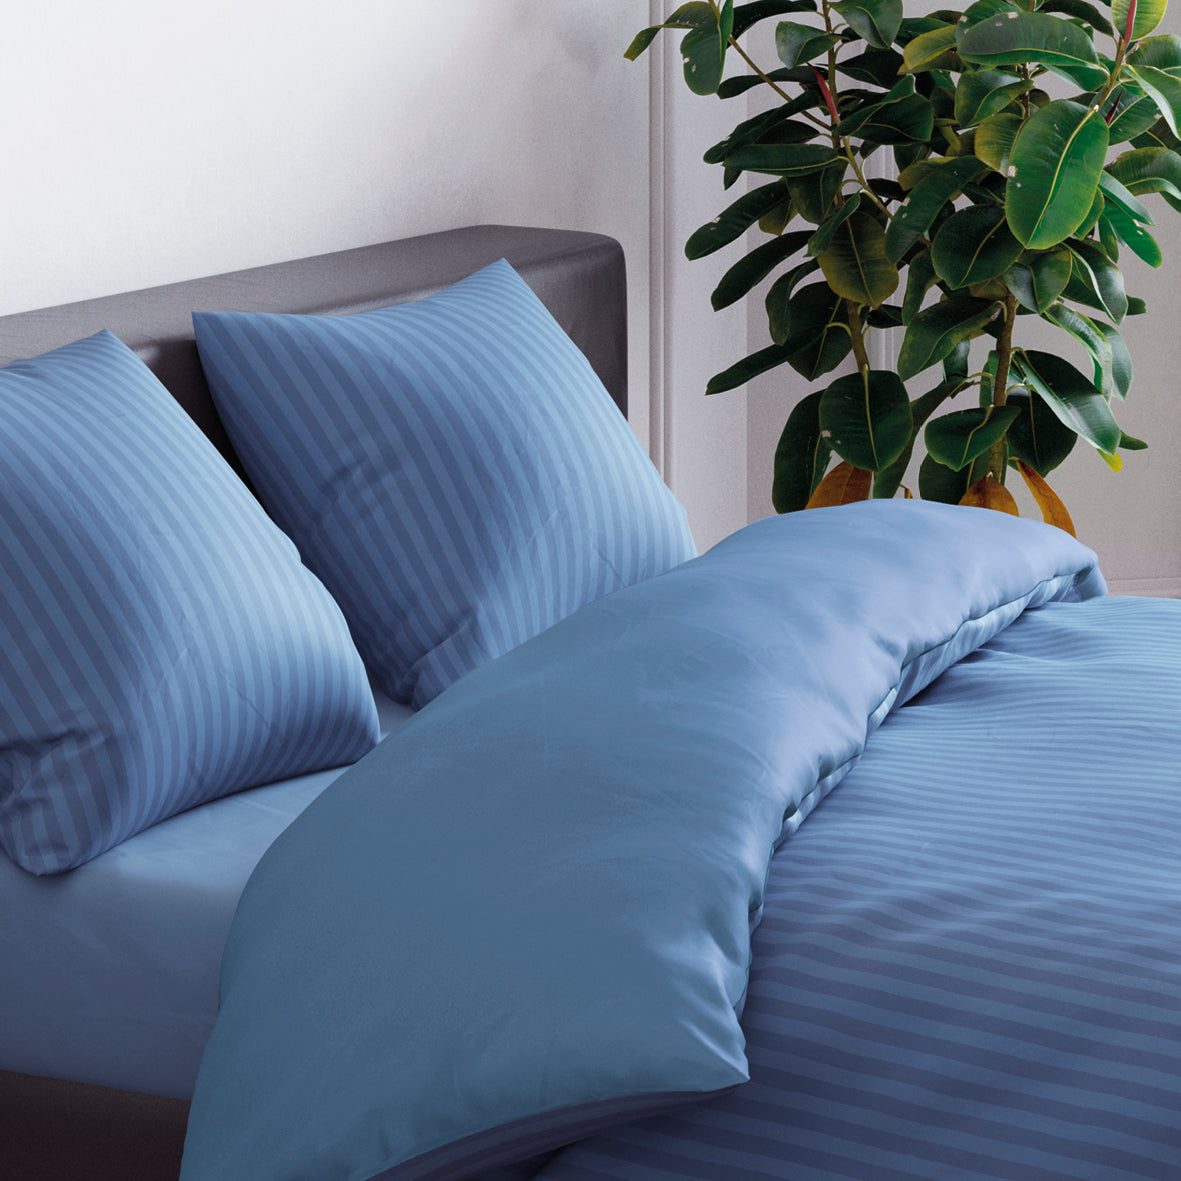 Pillowcase(s) cotton satin dobby stripe woven Blue